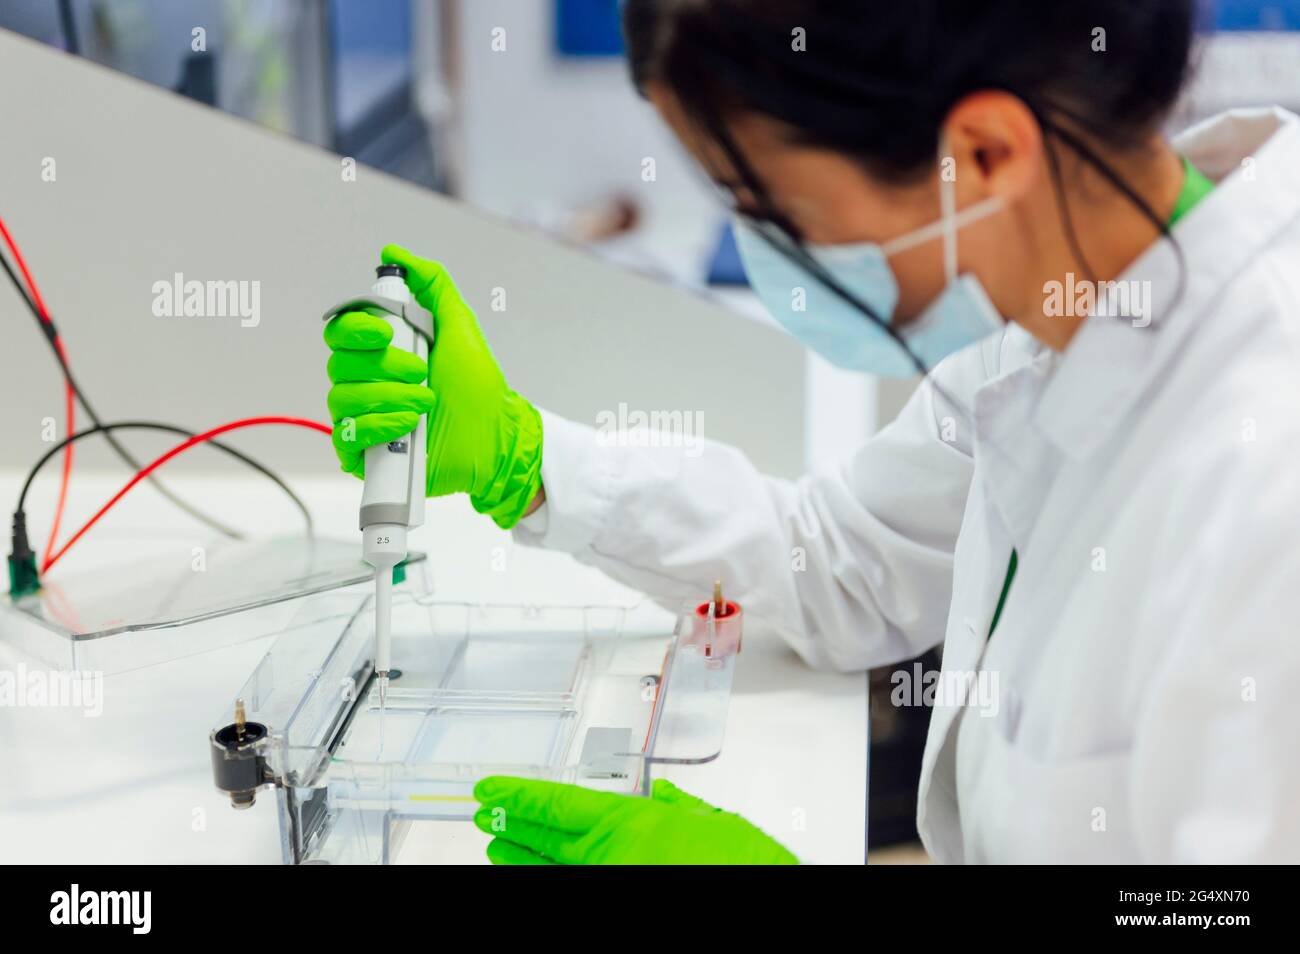 Esperto medico femminile che utilizza la pipetta su un apparecchio per elettroforesi durante l'analisi in laboratorio Foto Stock